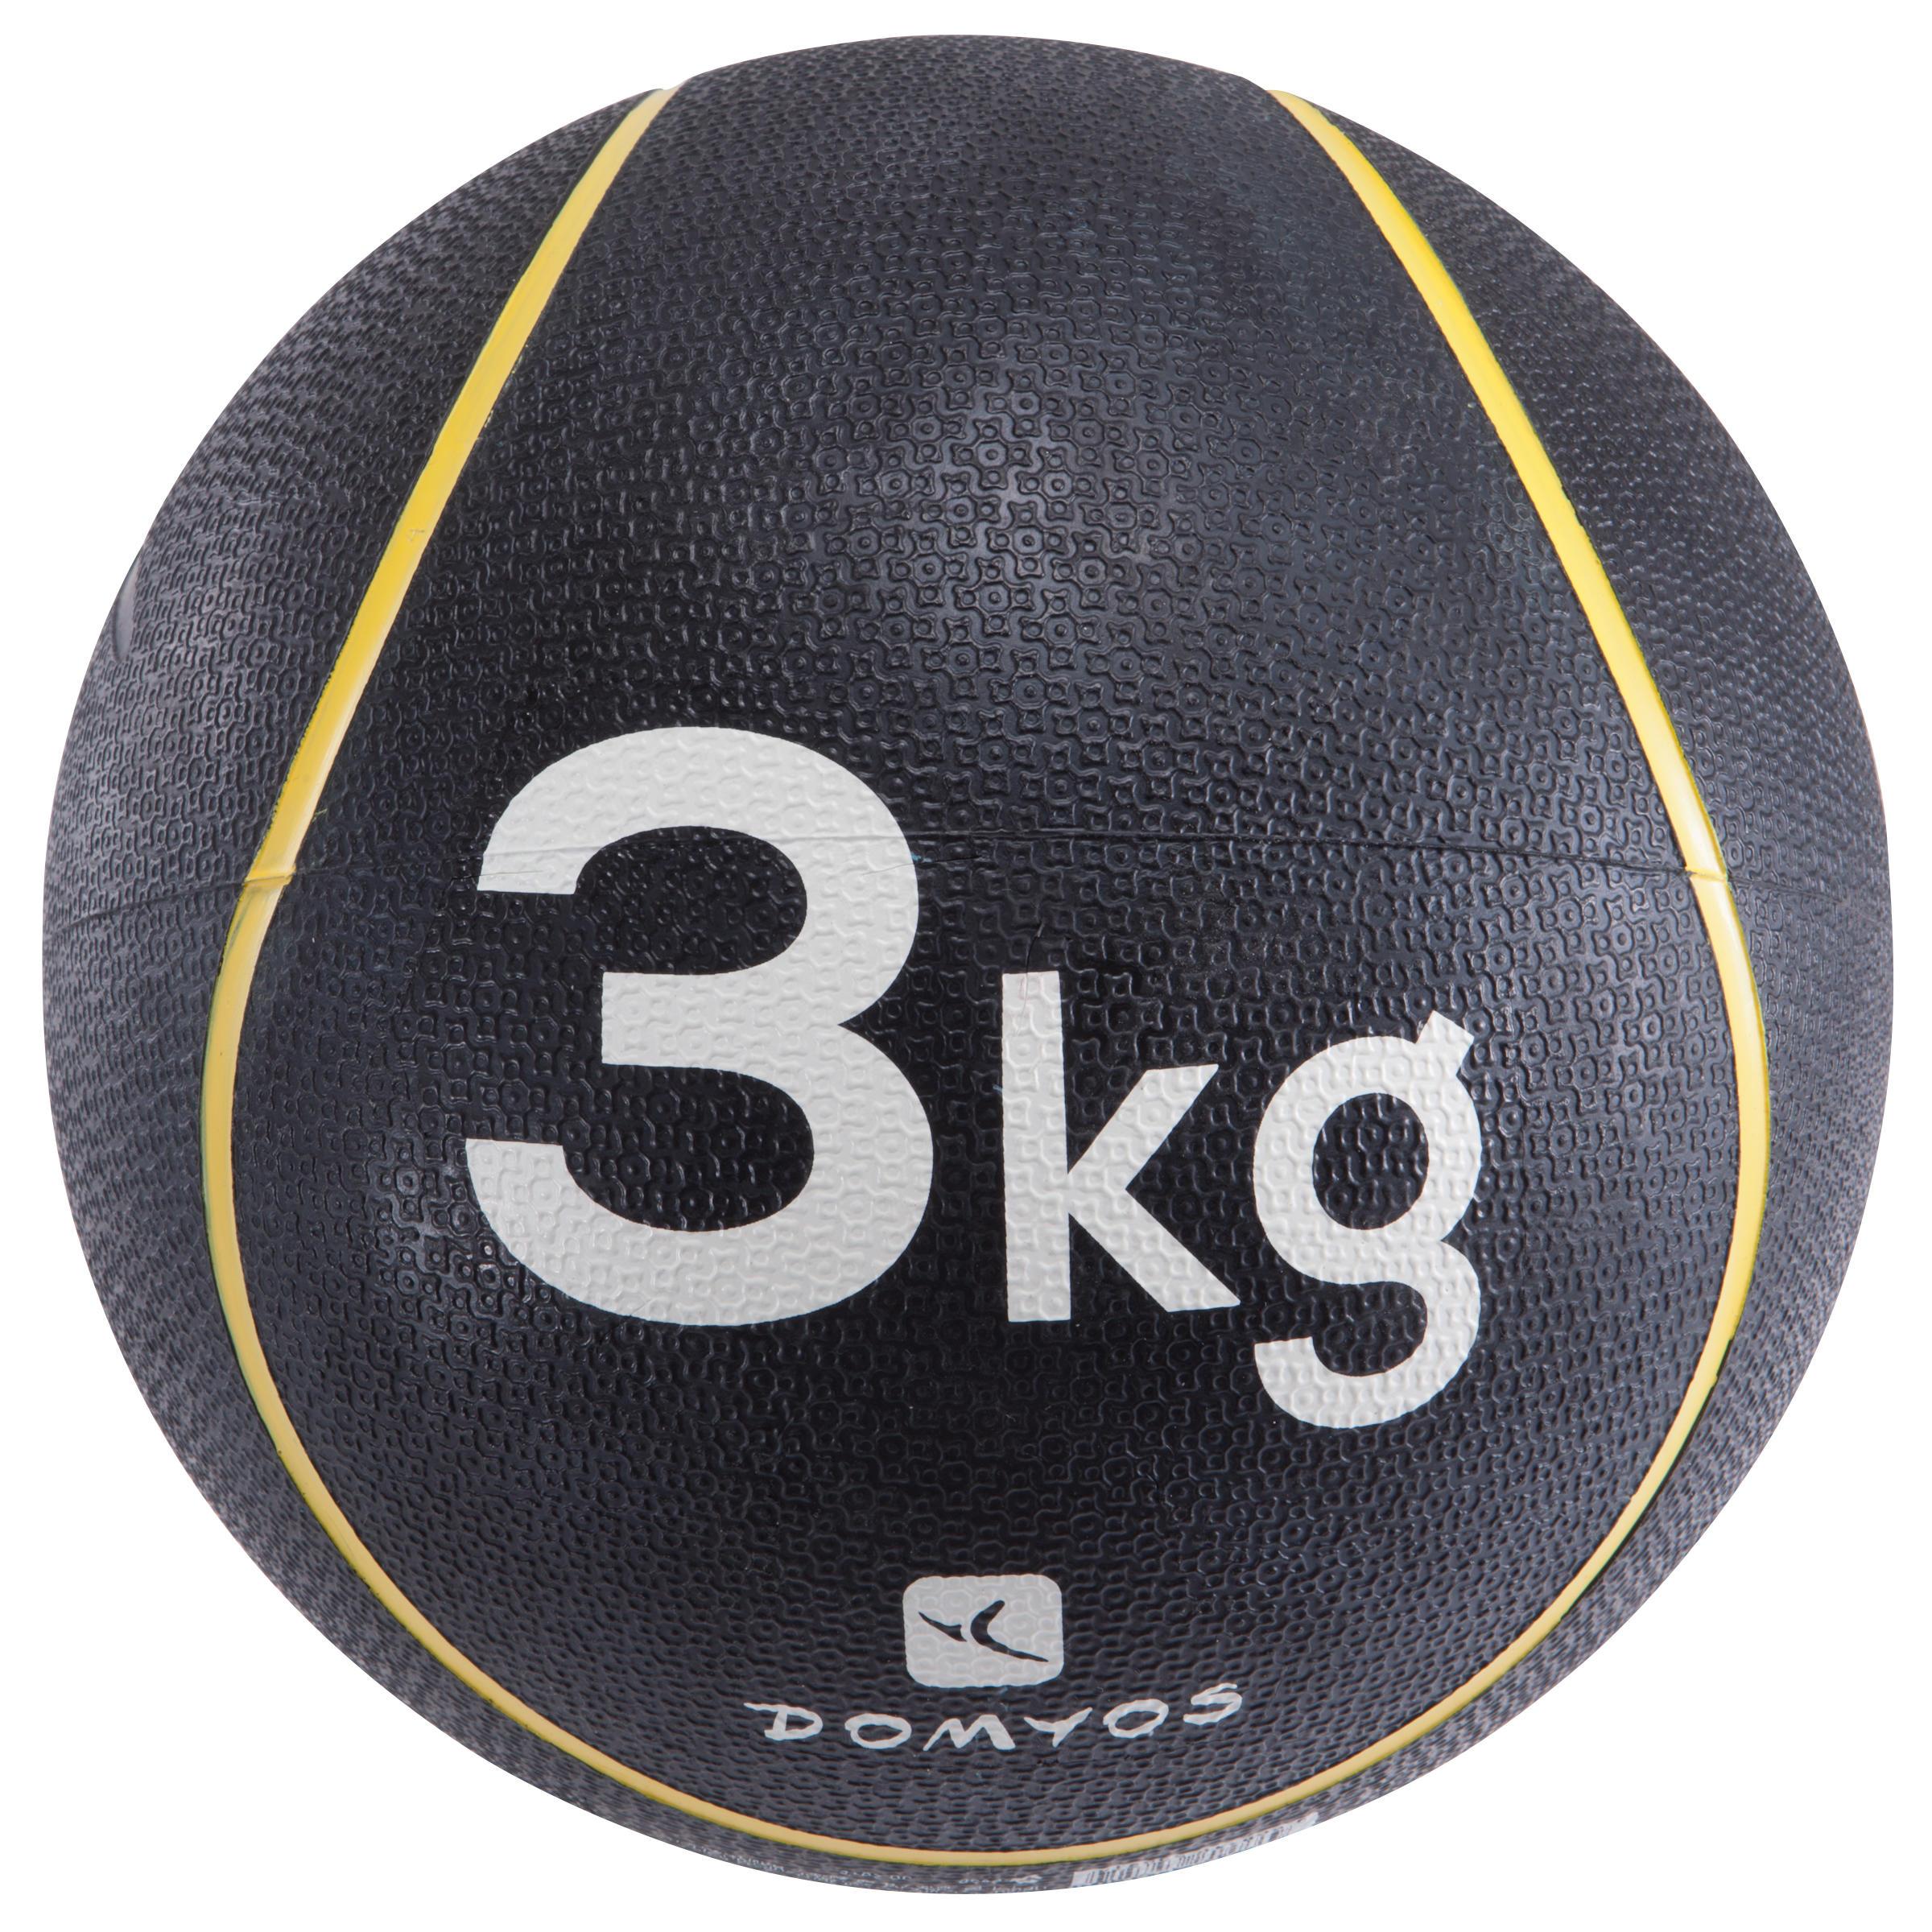 [ด่วน!! โปรโมชั่นมีจำนวนจำกัด] ลูกบอลน้ำหนัก 3 กก. สำหรับการเล่นพิลาทิสเพื่อกระชับสัดส่วน สำหรับ ยิมนาสติกพิลาทิส